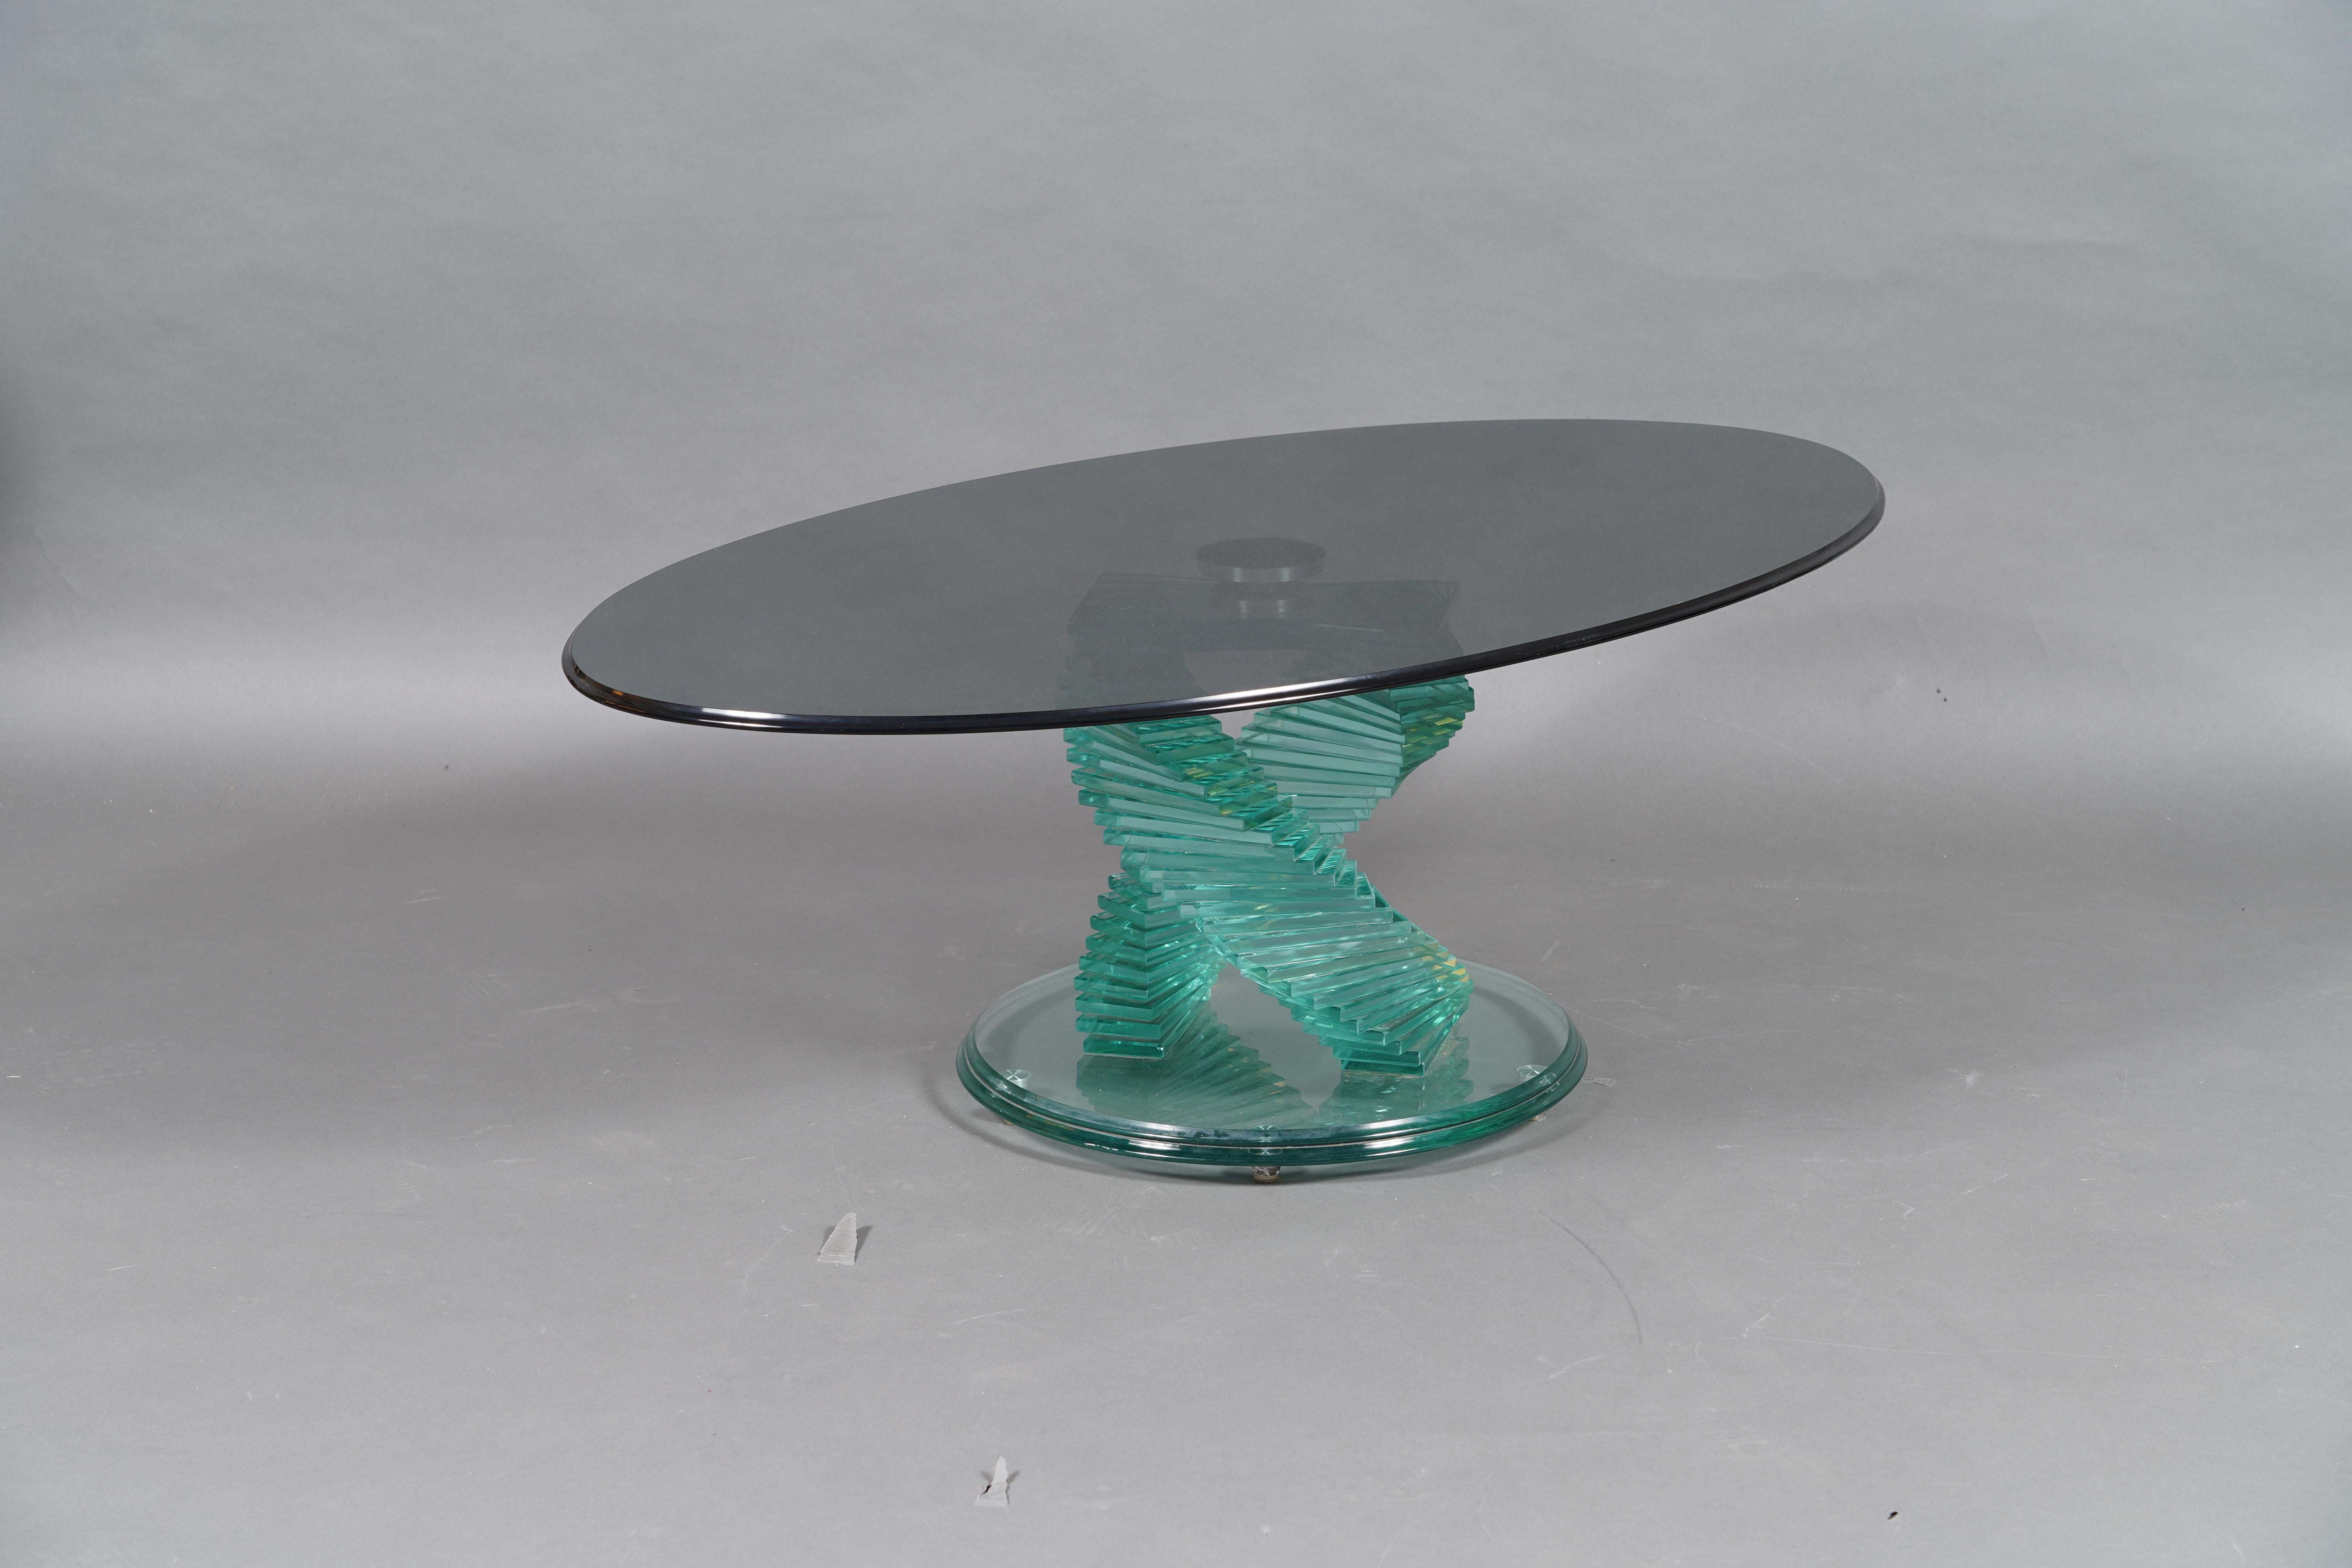 Schöner Vintage-Tisch, inspiriert vom Stil von Danny Lane's, spiralförmig gestapeltes Glas mit abnehmbarer ovaler Glasplatte. Das einzigartige spiralförmige Design mit sauber gestapelten Glasrechtecken sorgt für eine auffallende Ästhetik. Der ovale